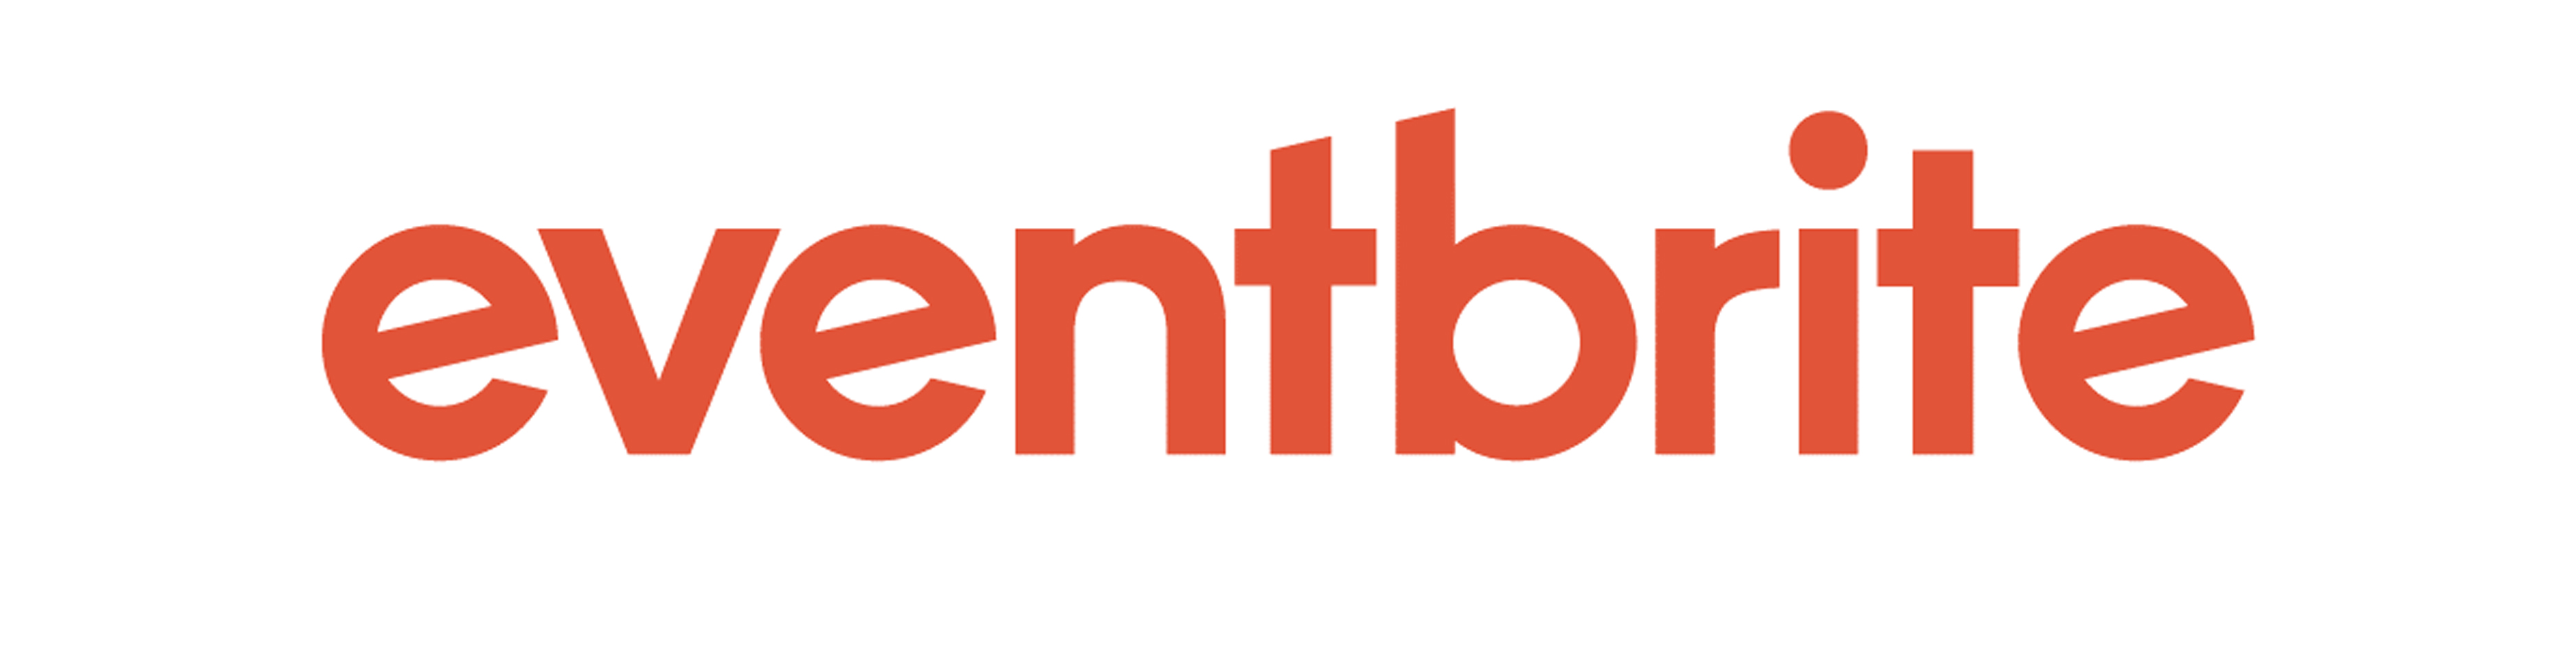 one world rental | eventbrite portal